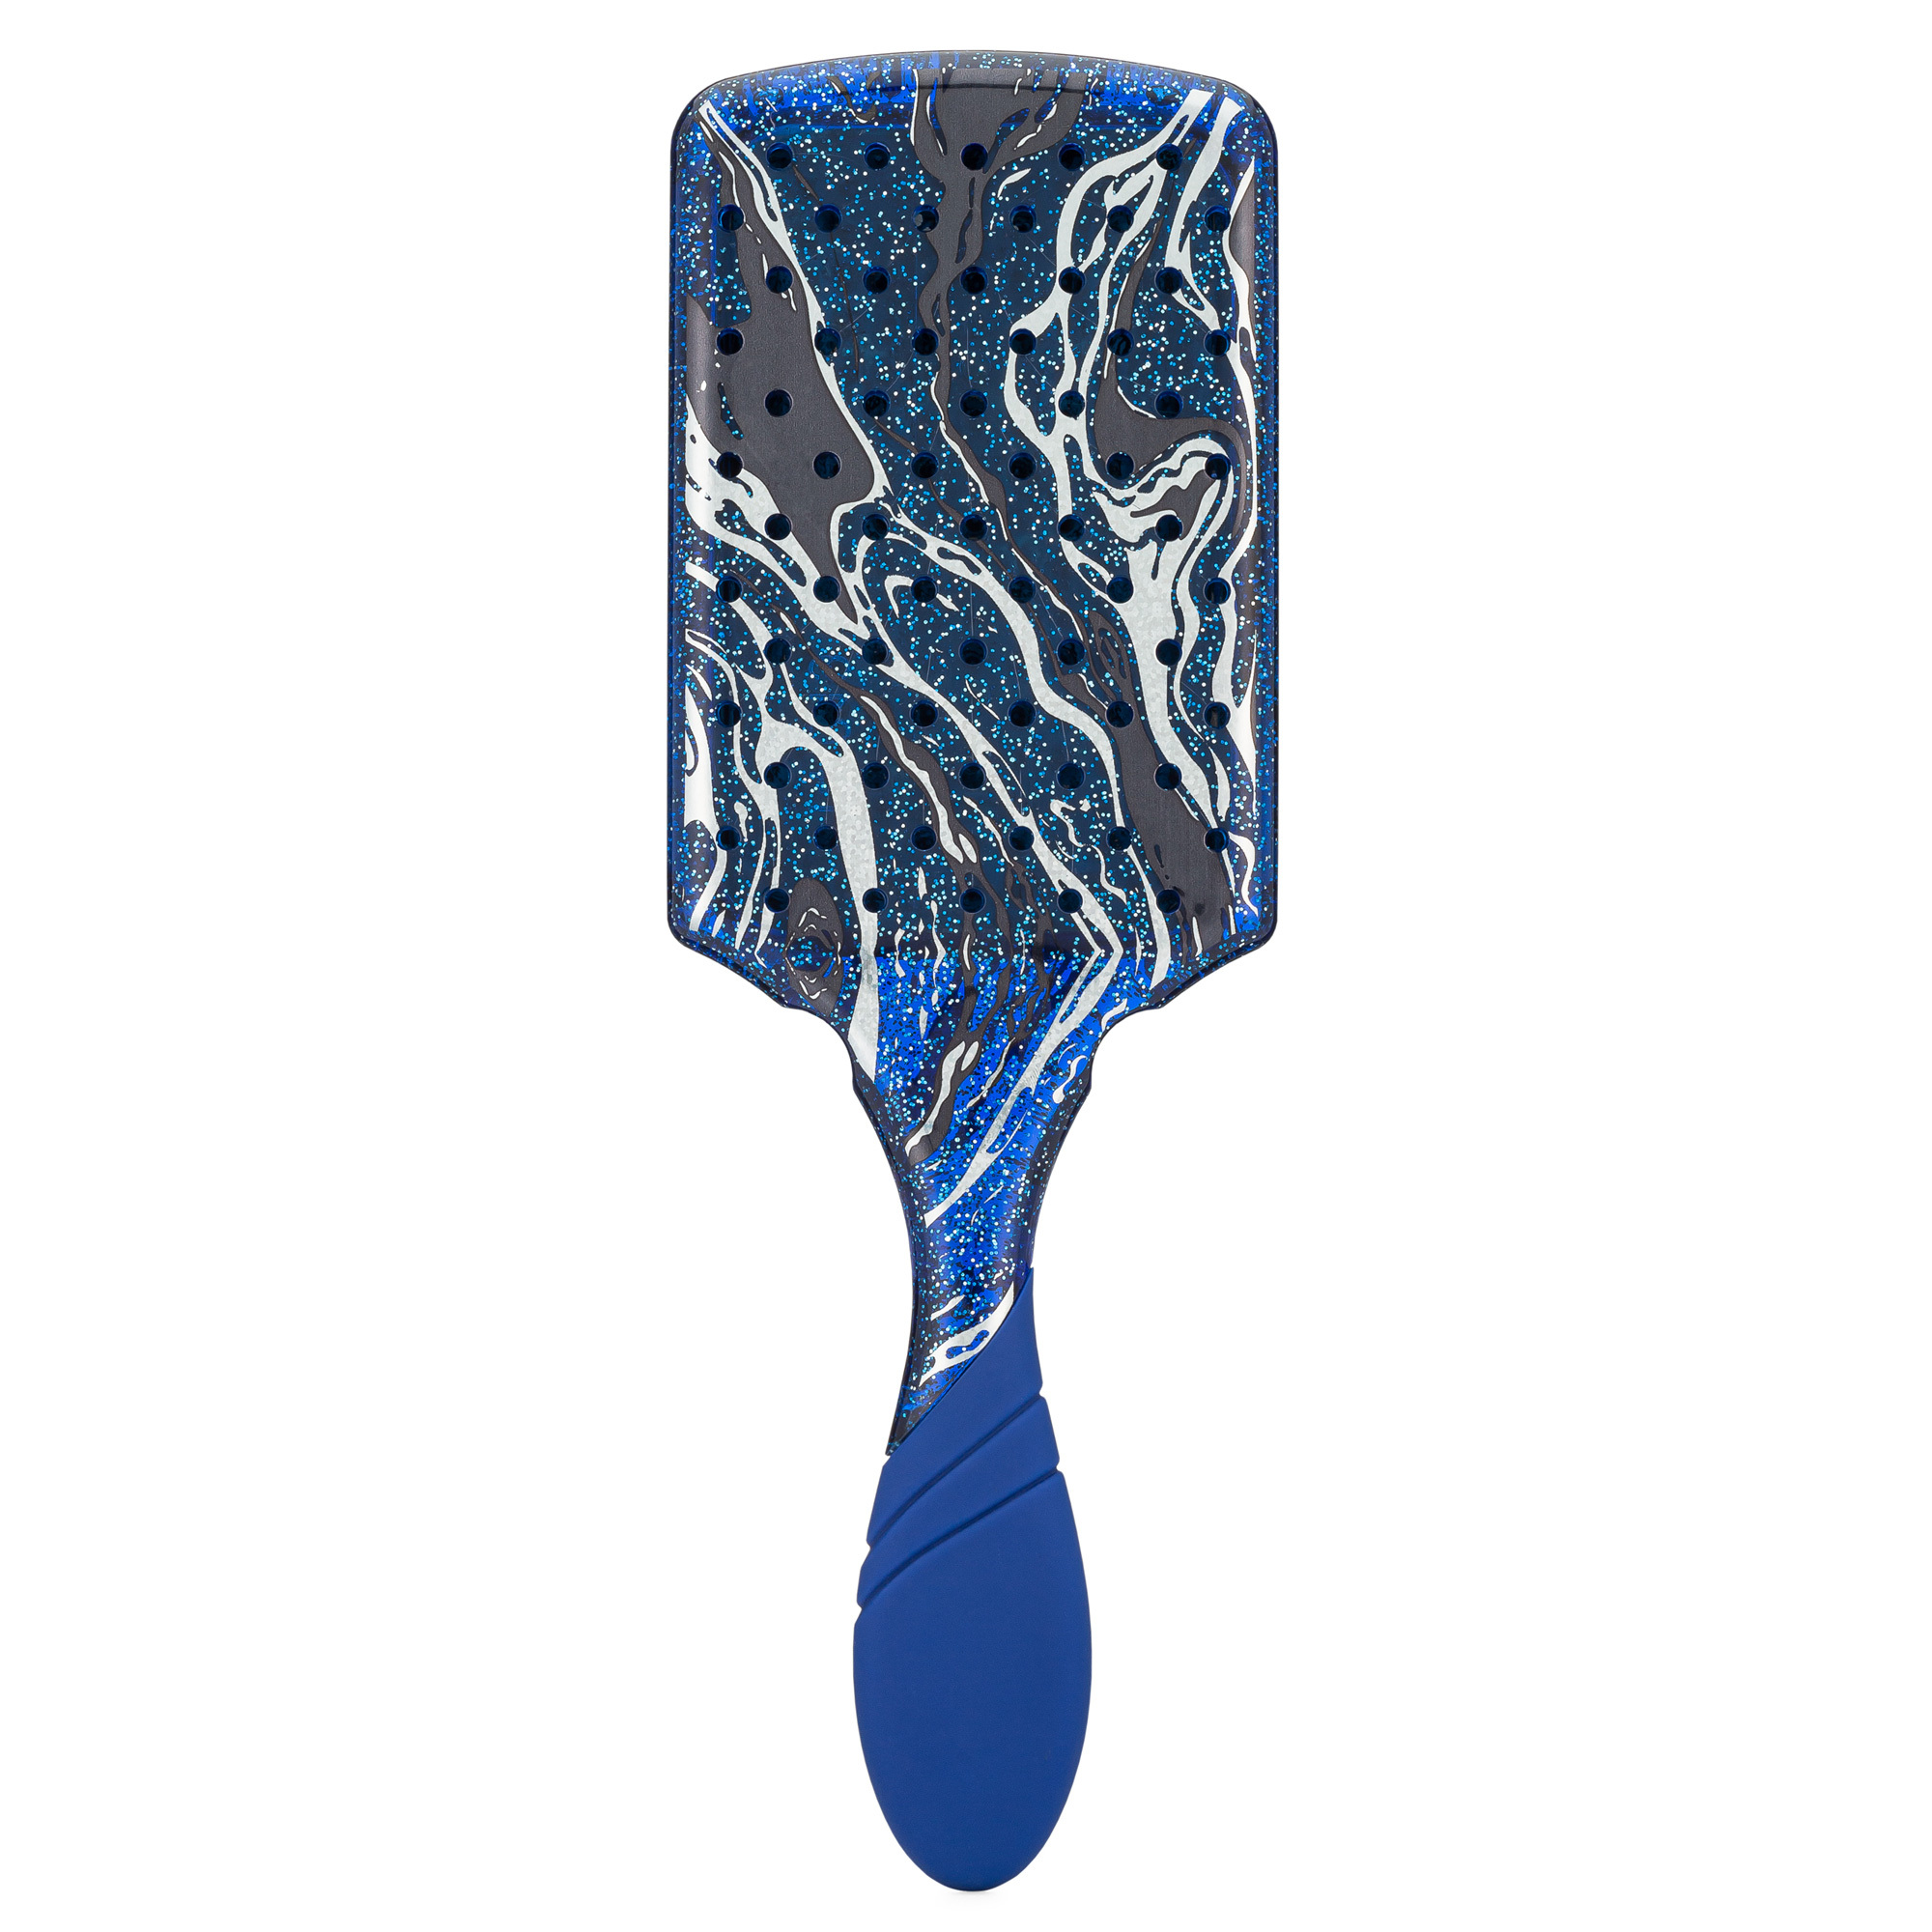 Wet Brush Pro Paddle Detangler - Mineral Sparkle - Midnight